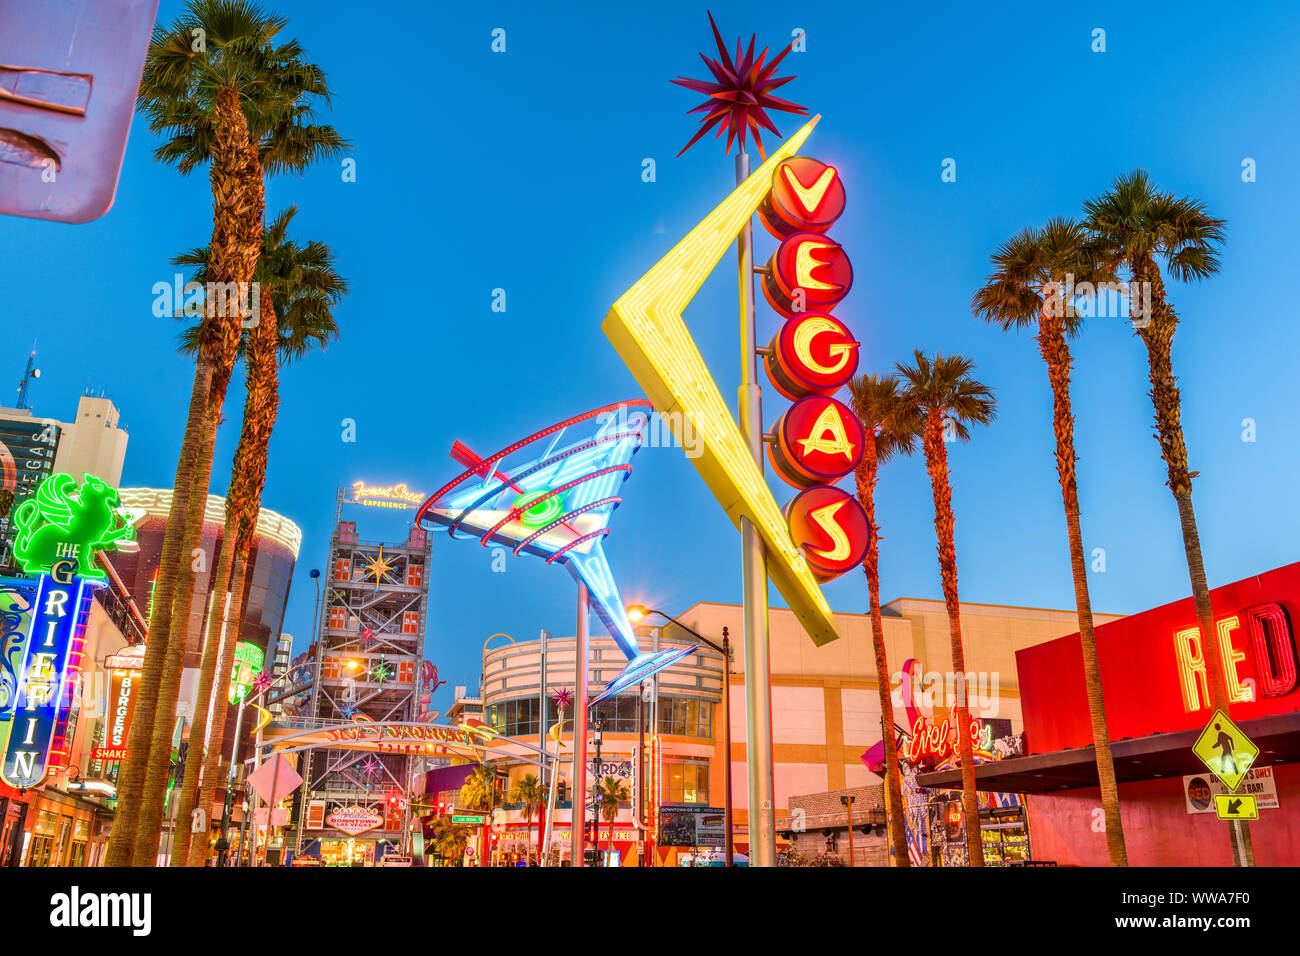 LAS VEGAS, Nevada - Mai 13, 2019: Fremont East District von Las Vegas in der Morgendämmerung. Es gehört zu den bekanntesten Straßen in das Las Vegas Valley. Stockfoto